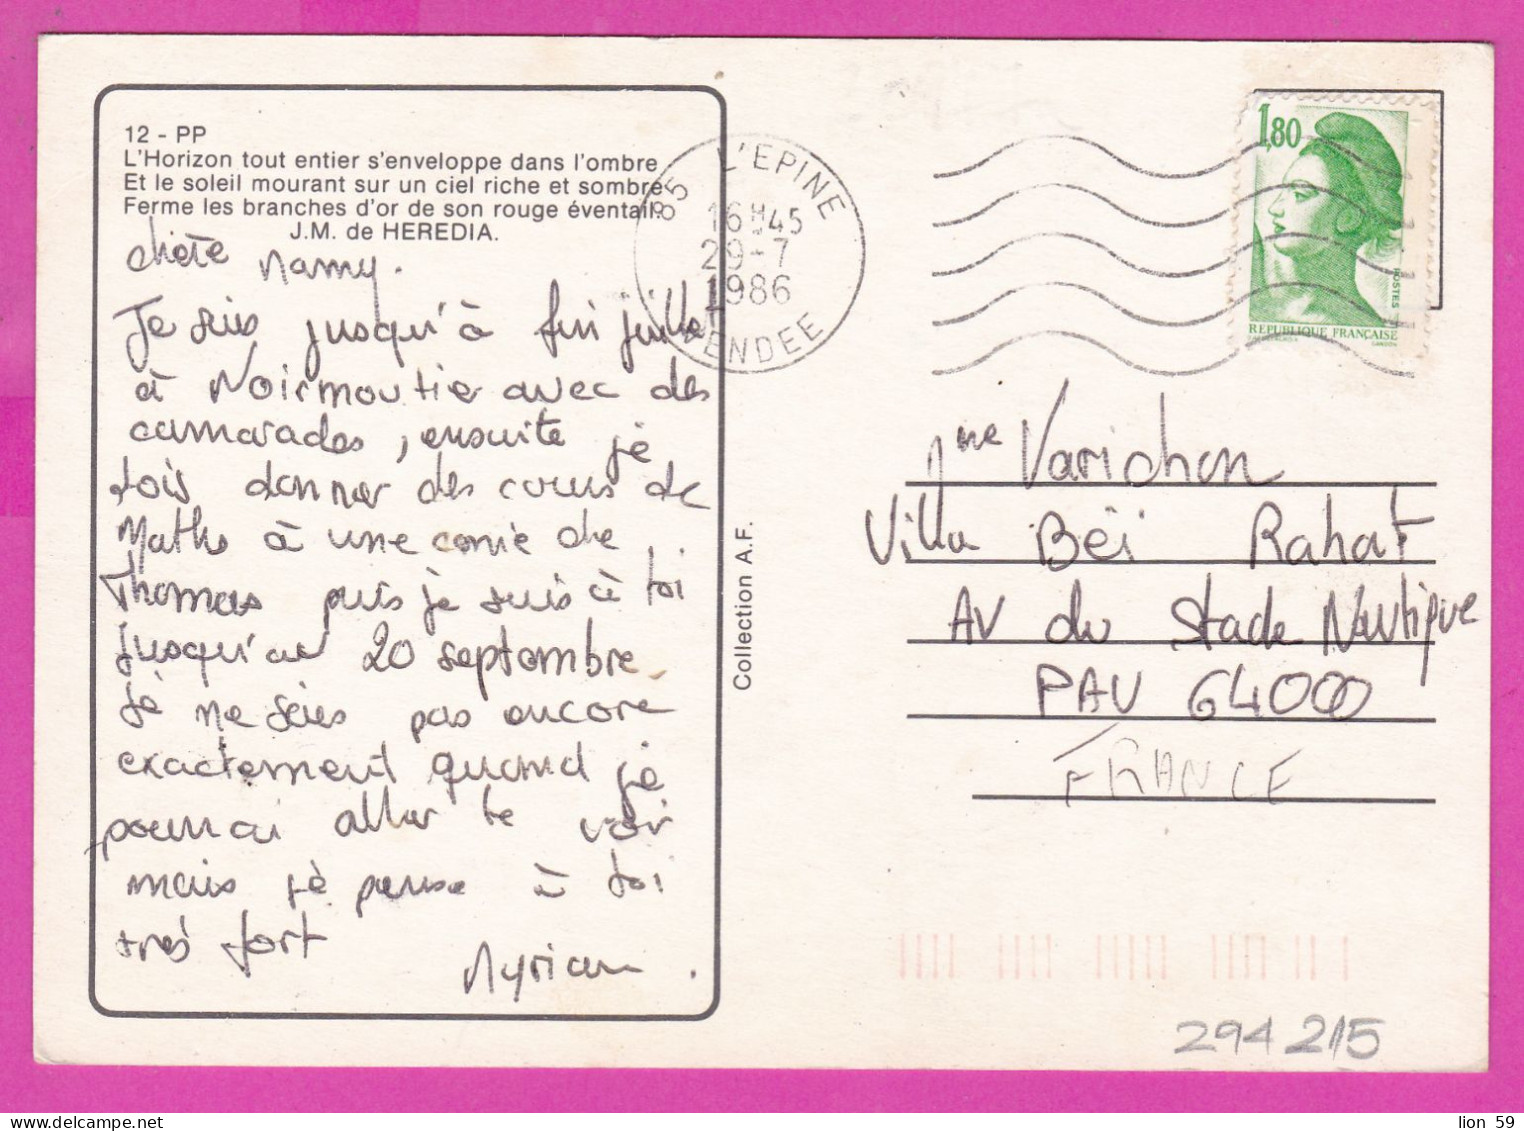 294215 / France - L'Horizon Tout Entier S'enveloppe Dans L'ombre Poem PC 1986 L'Epine USED 1.80 Fr. Liberty Of Gandon , - 1982-1990 Liberté De Gandon